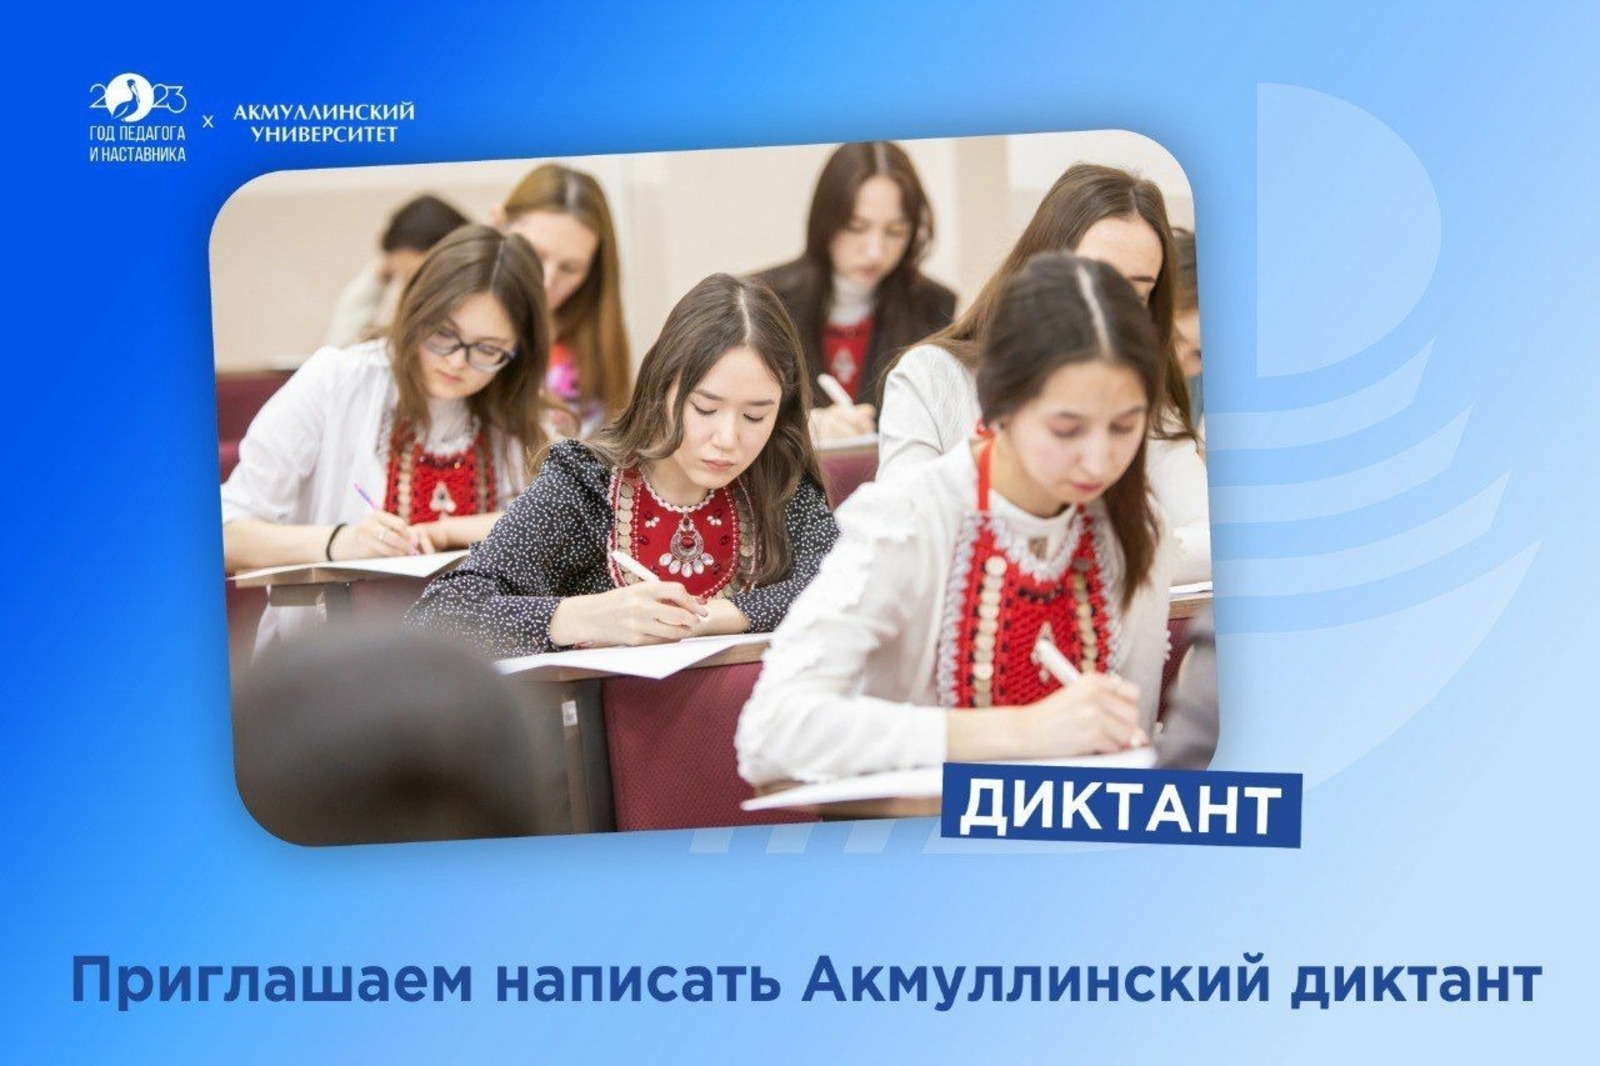 Жителей Башкирии приглашают написать «Акмуллинский диктант»